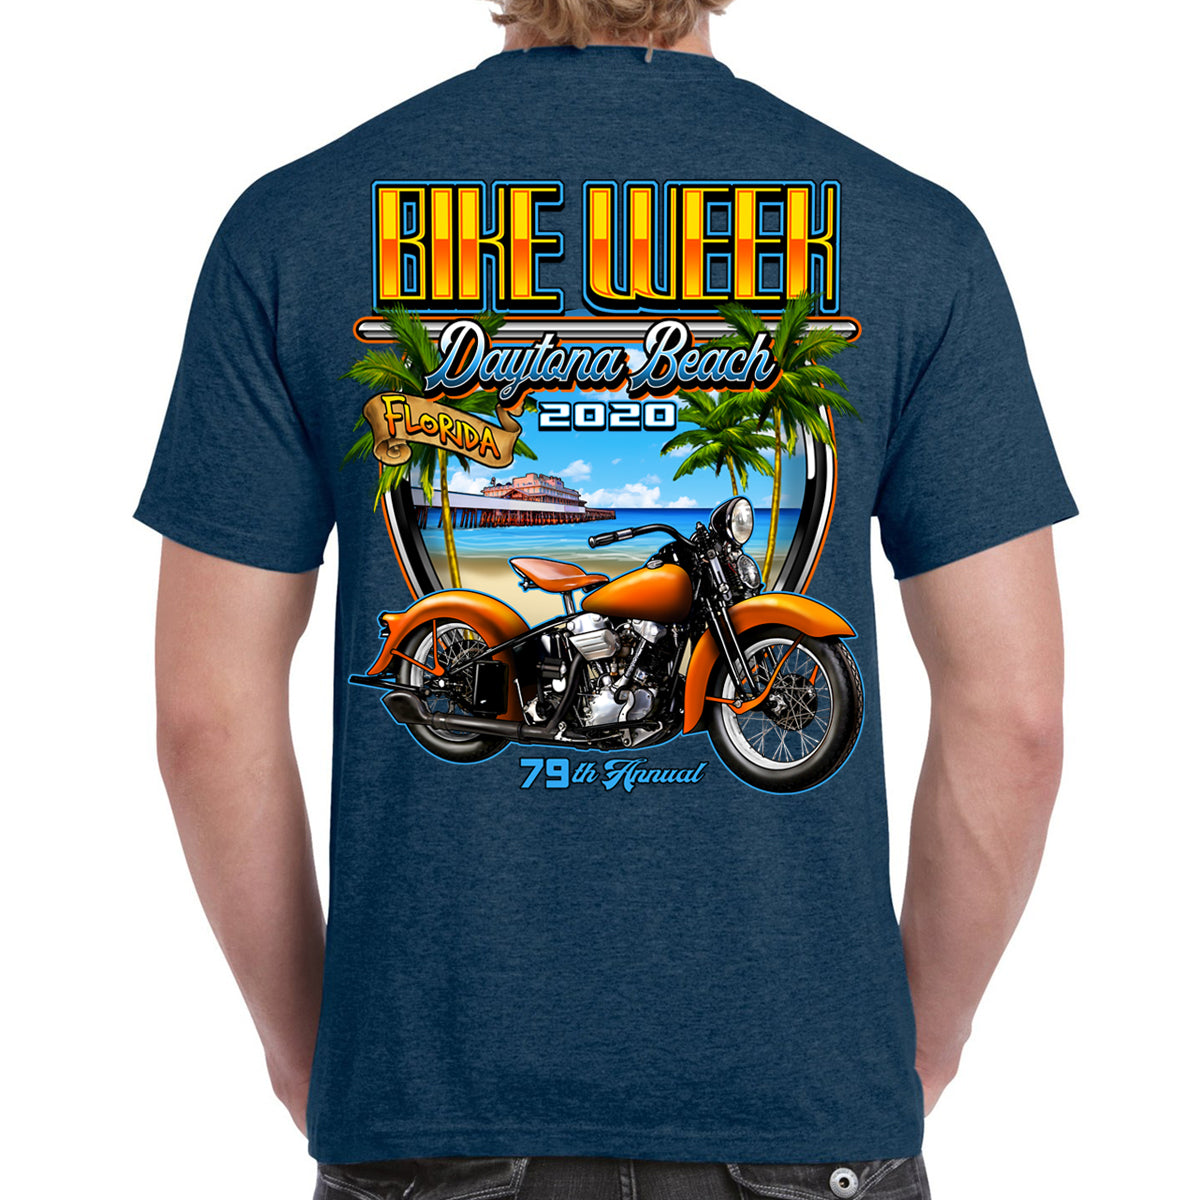 2020 Bike Week Daytona Beach Beach Shield T-Shirt | eBay